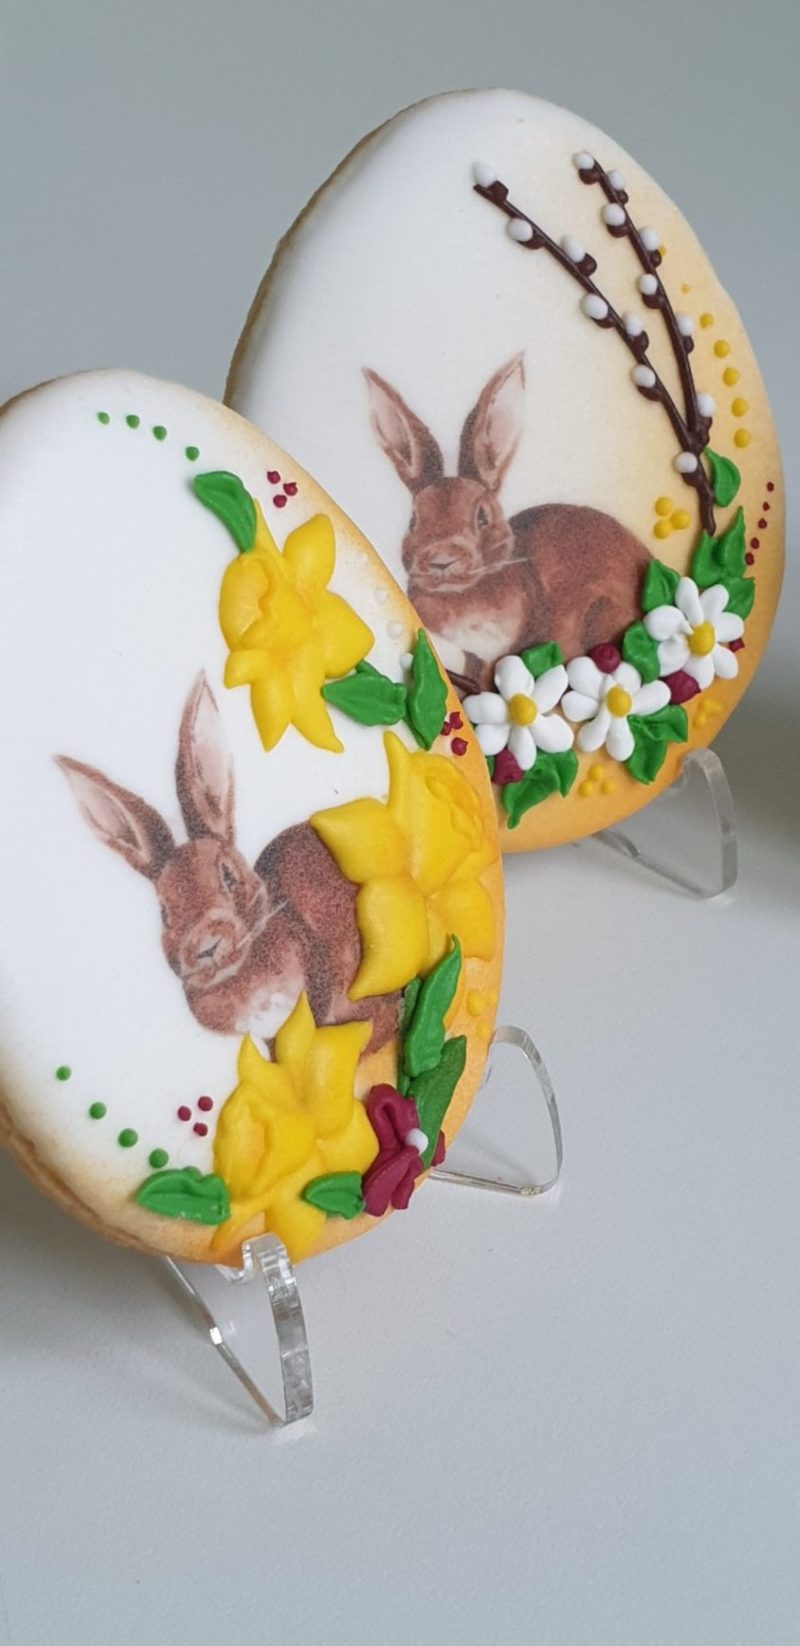 Ciasteczka Wielkanocne - Pisanka z zajączkiem, Króliczek wielkanocny, ciasteczka wielkanocne, dekoracje wielkanocne, lukrowane ciasteczka Basia sweets